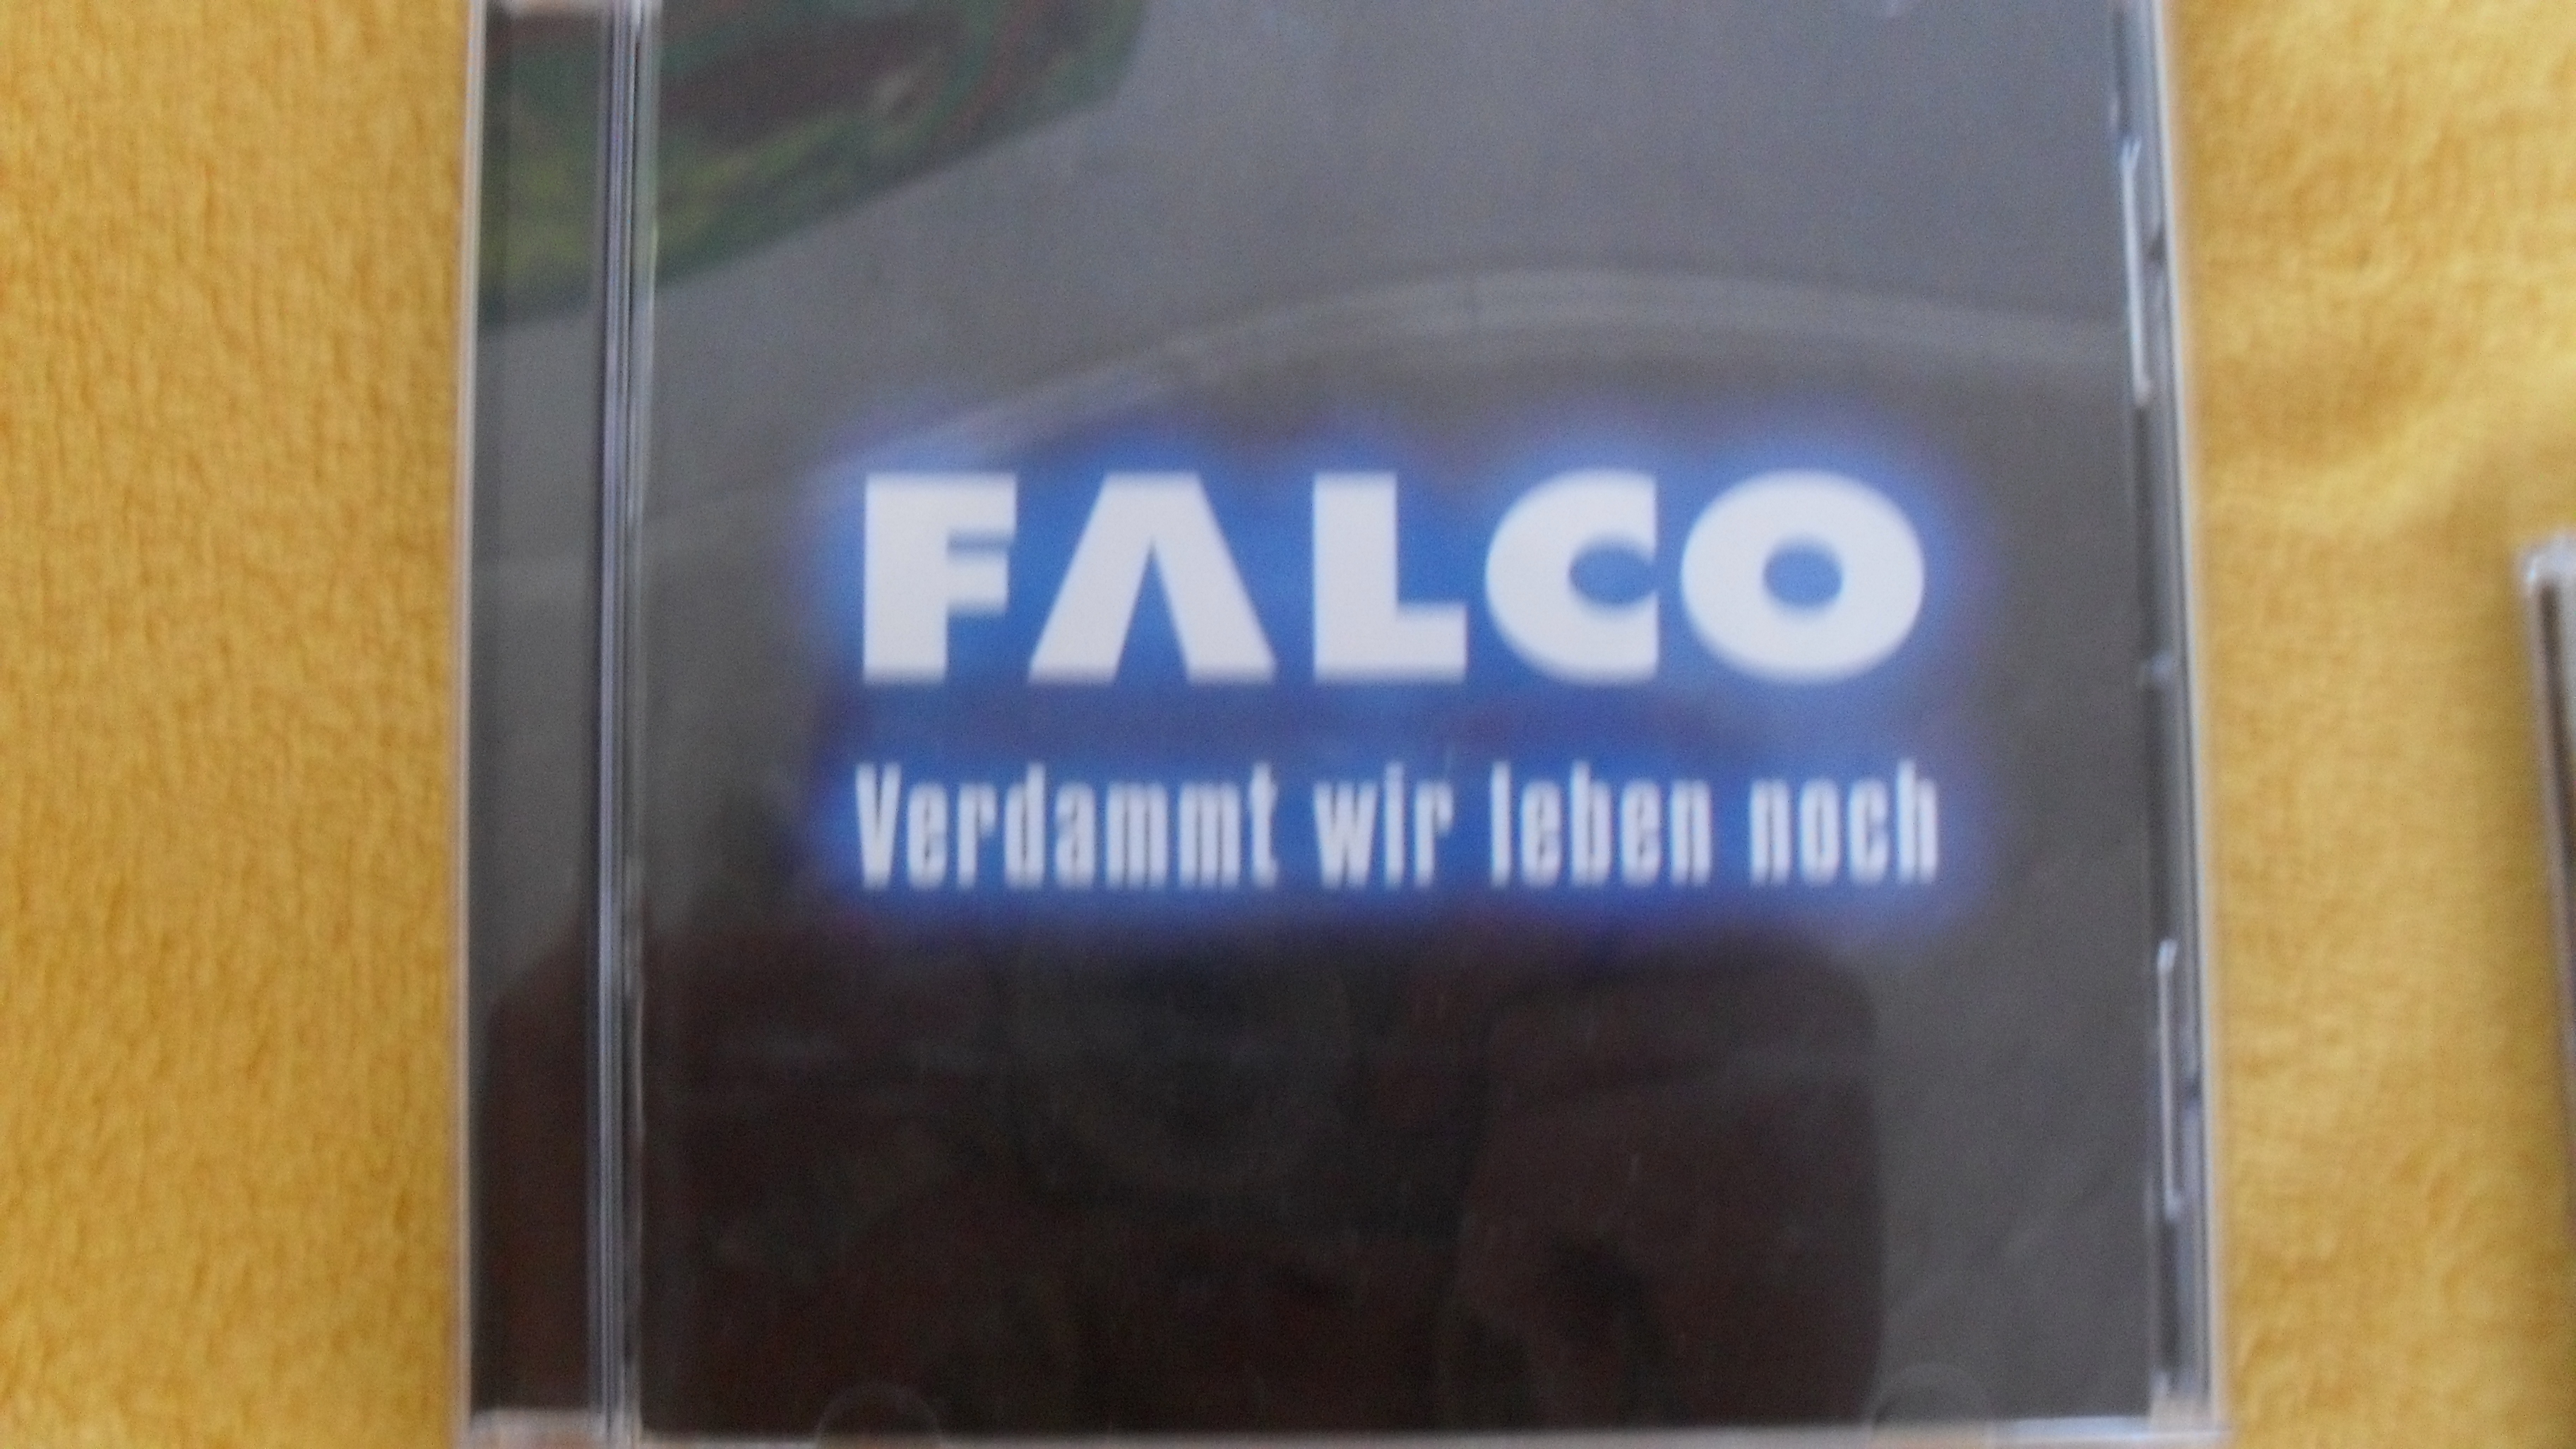 Troufnu si říci,mě nejoblíbenější album: Verdammt,wir leben noch!